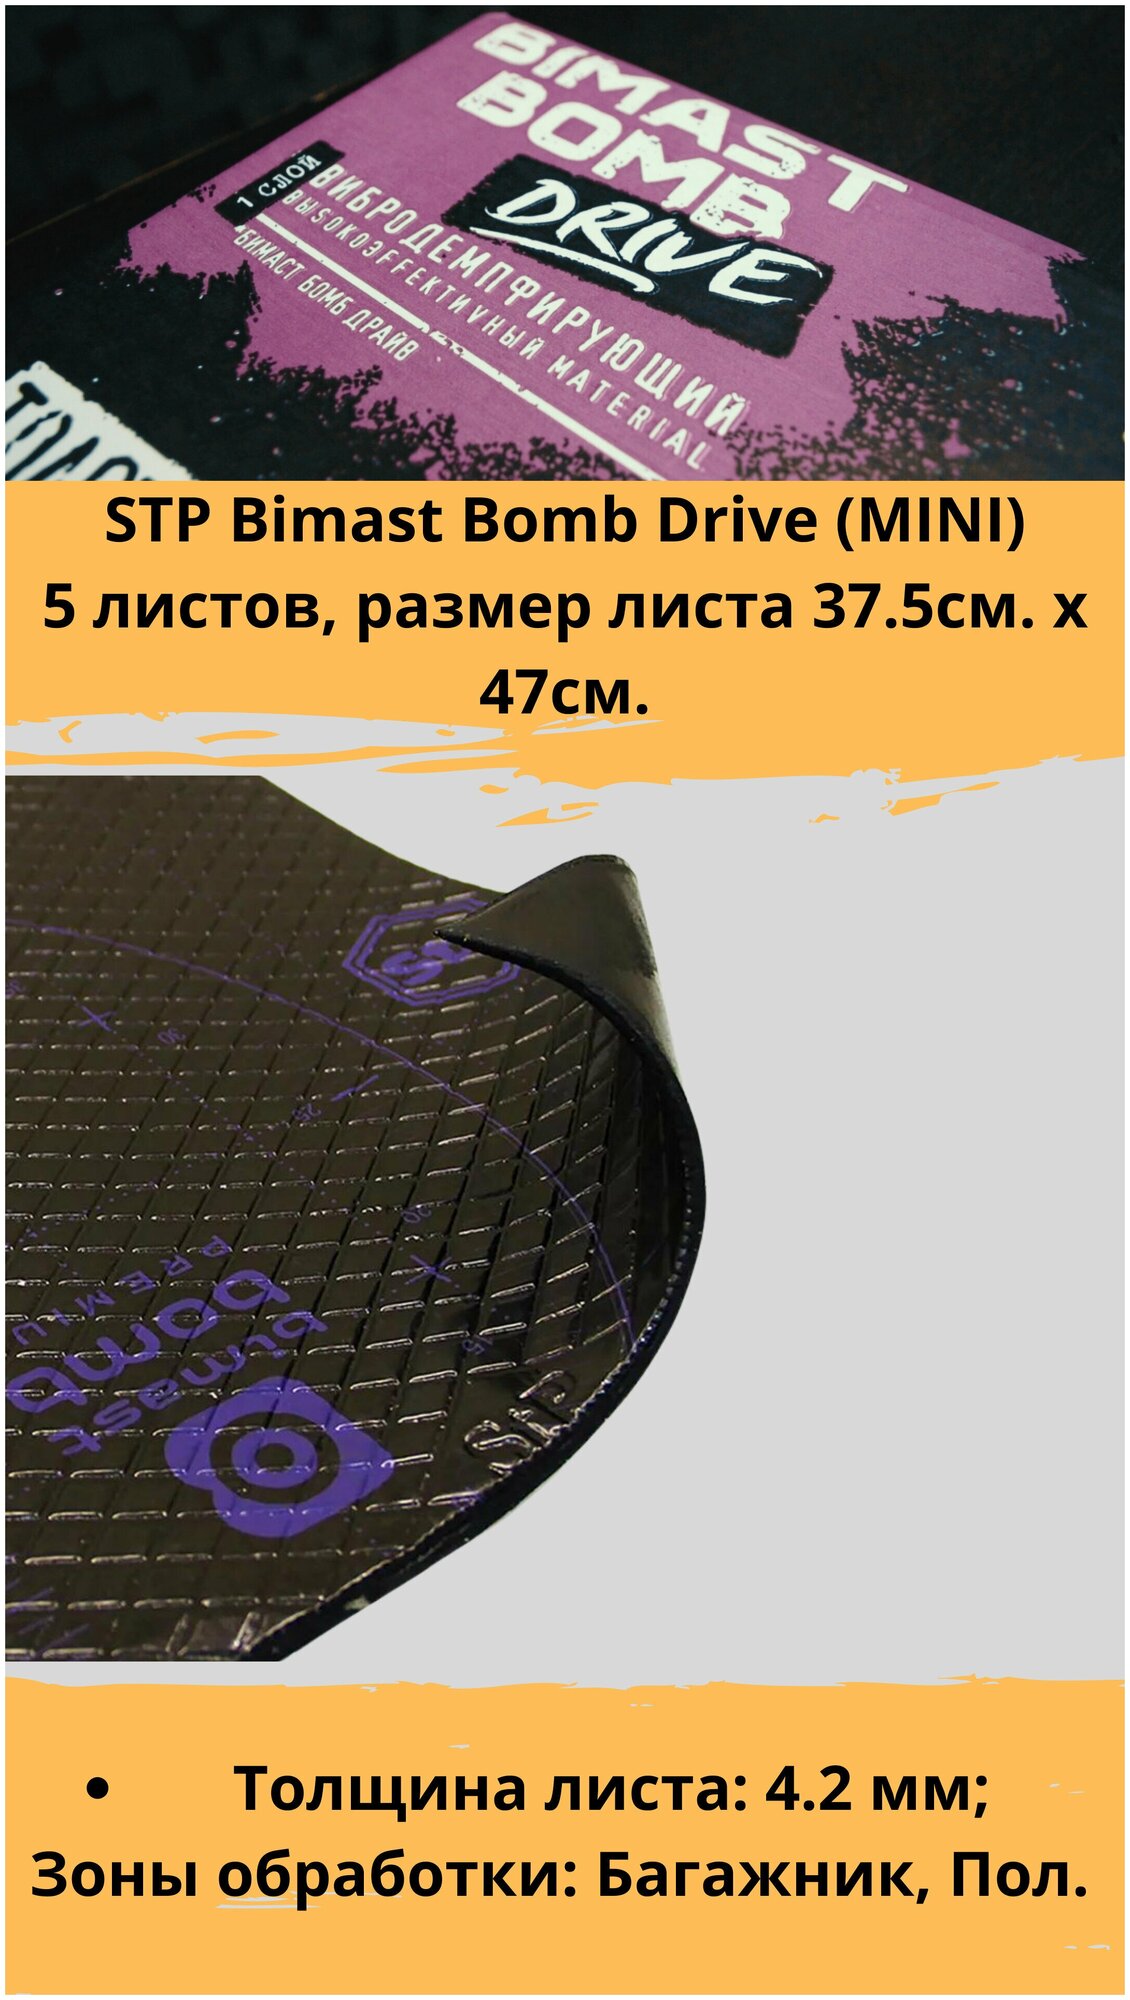 Виброизоляция STP Bimast Bomb Drive Mini / Вибродемпфер СТП Бимаст Бомб Драйв Мини (5 листов, размер листа 37.5см. х 47см.)